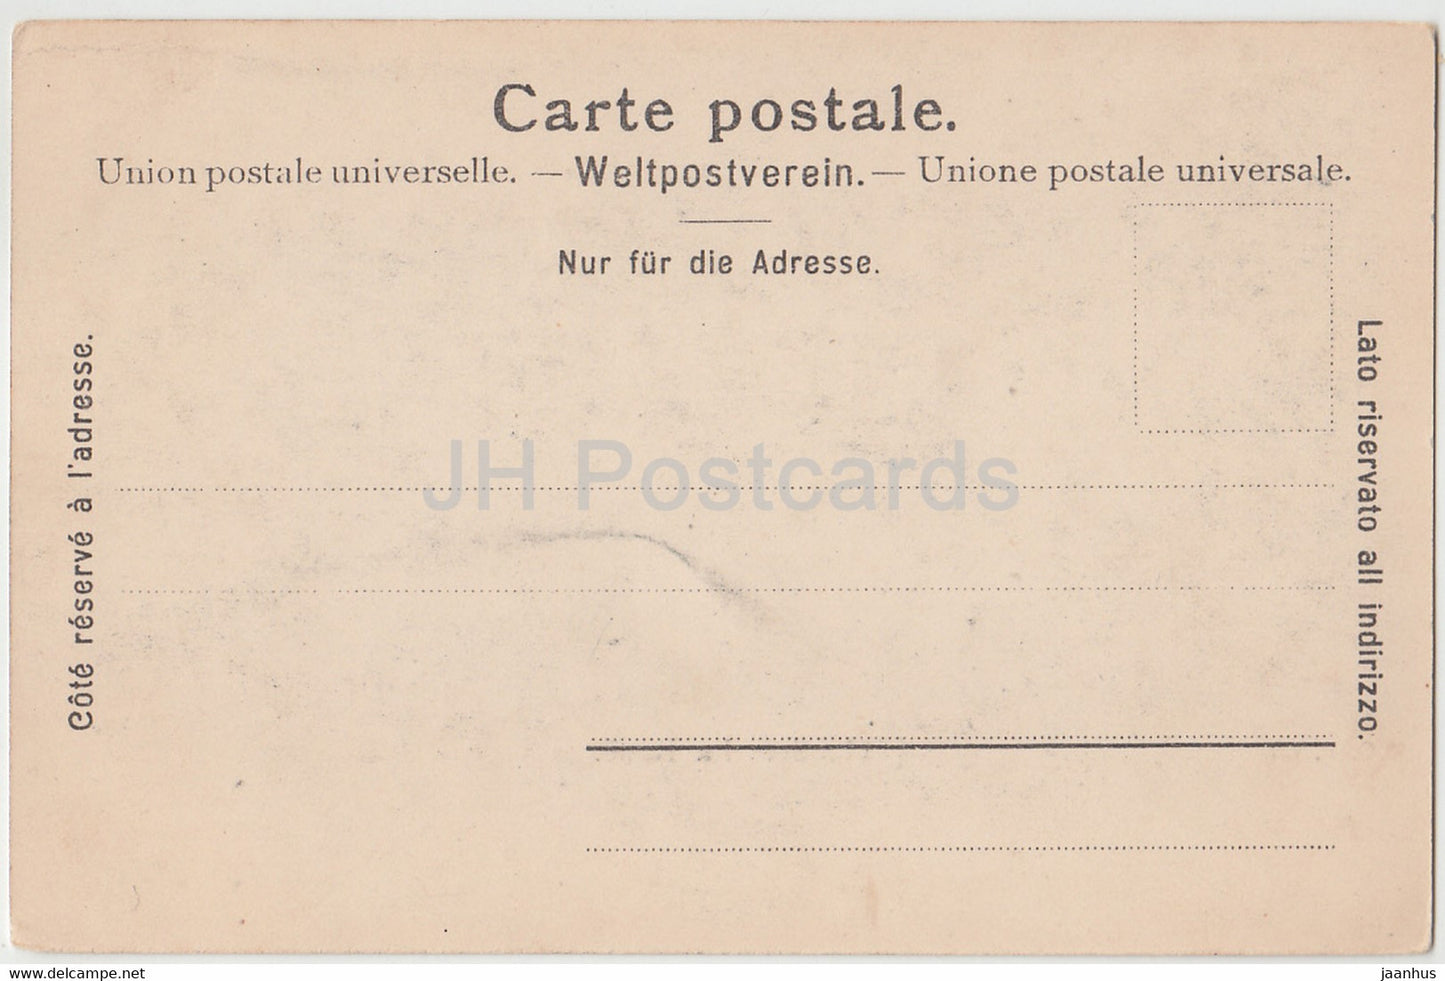 Geneve - Genève - La Rade - bateau à vapeur - navire - 127 - carte postale ancienne - Suisse - inutilisée